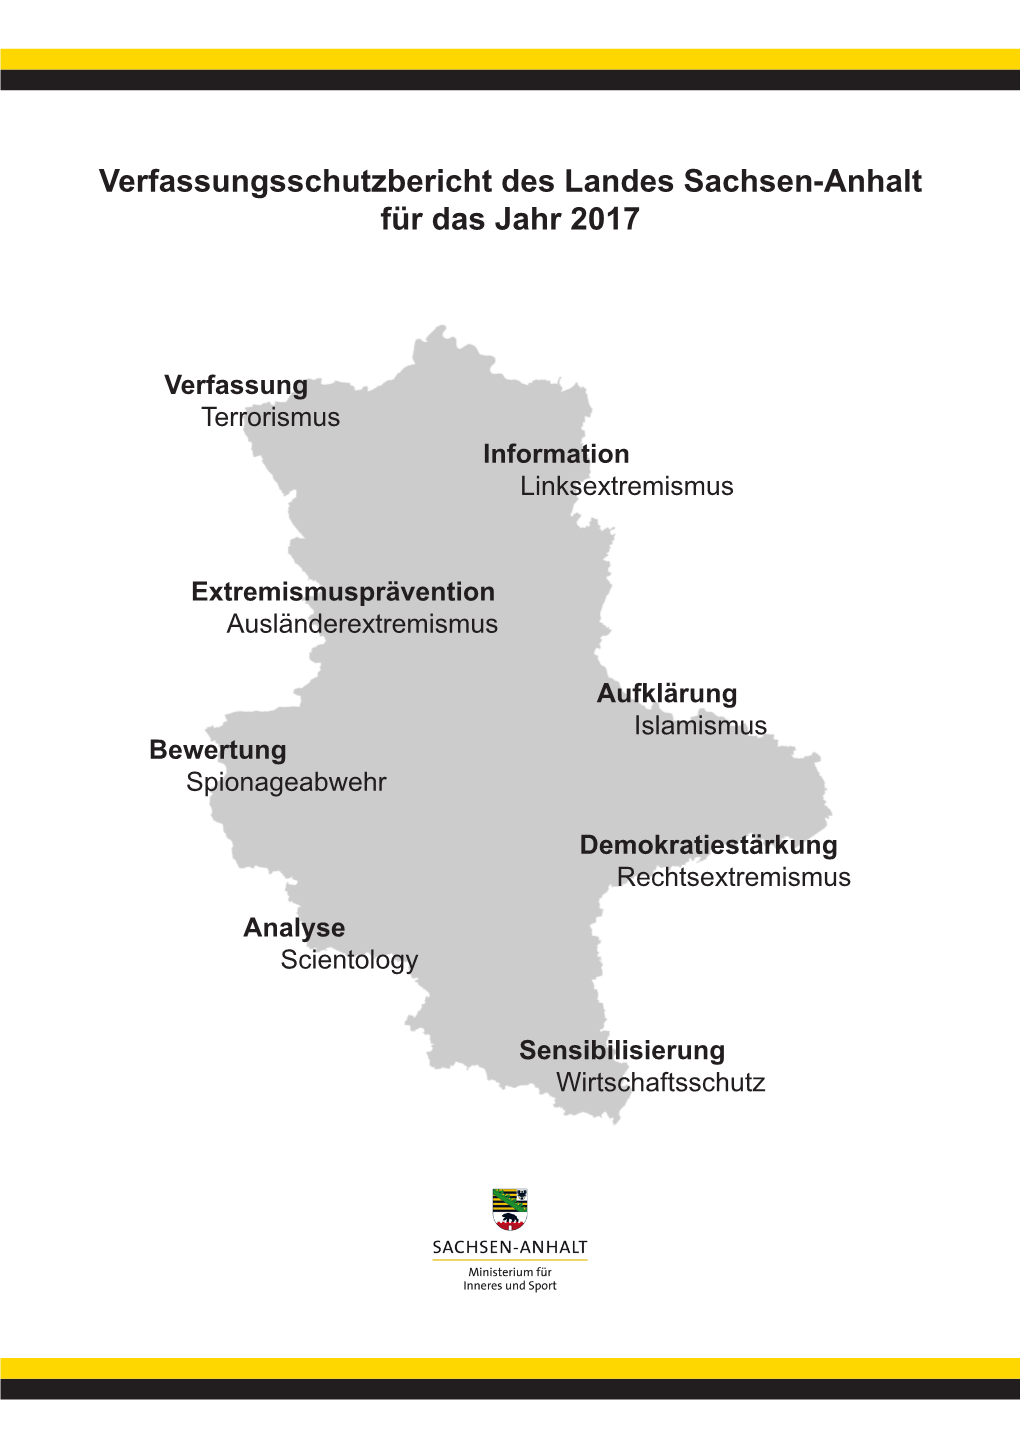 Verfassungsschutzbericht Des Landes Sachsen-Anhalt Für Das Jahr 2017